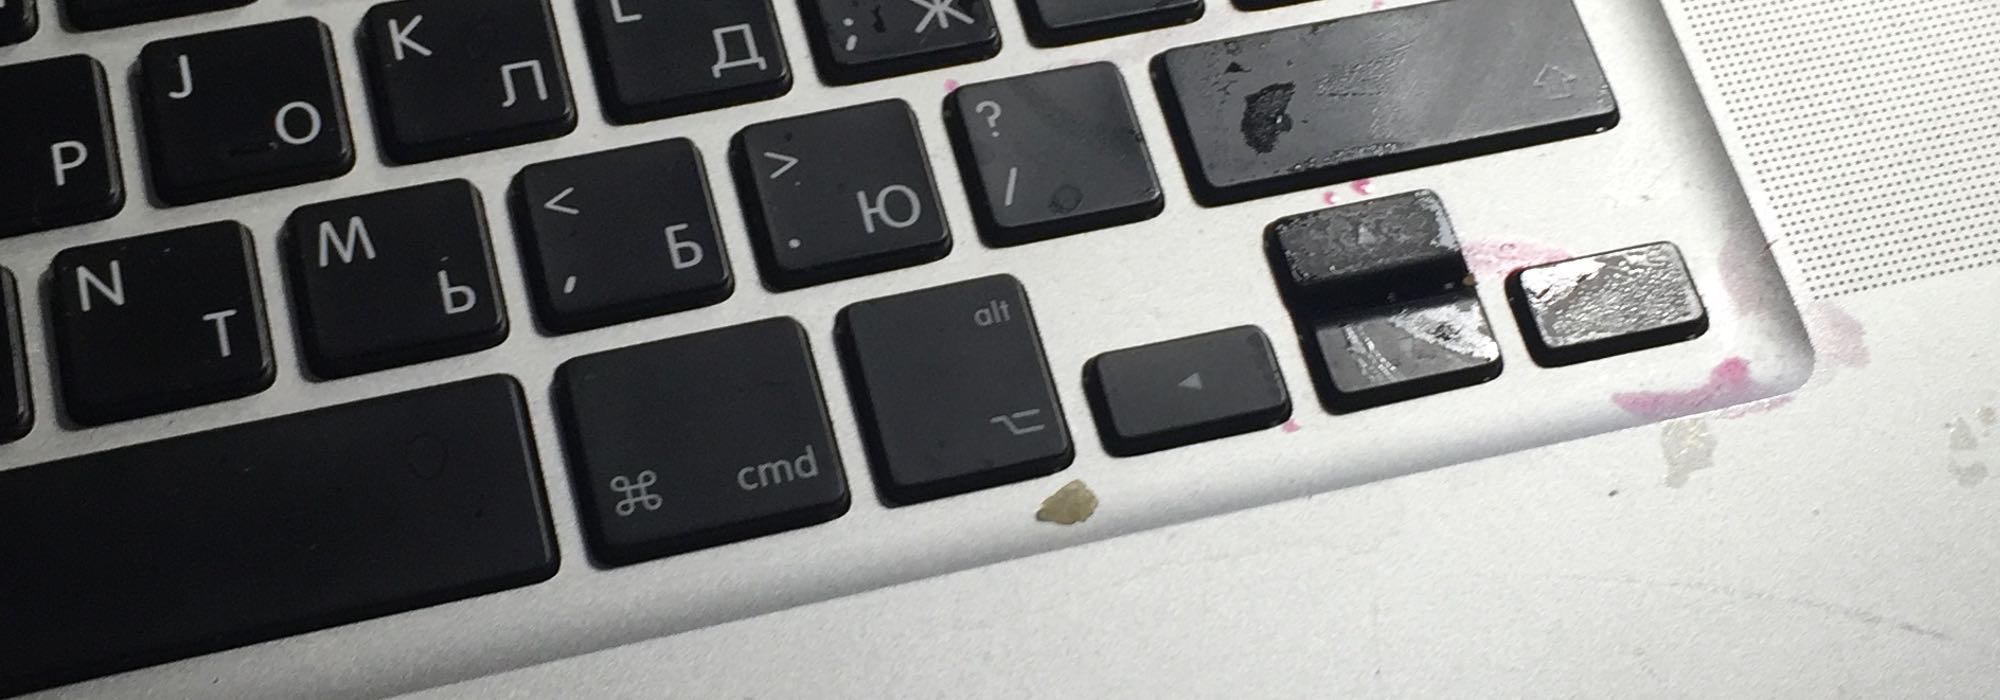 Восстановление MacBook после залития